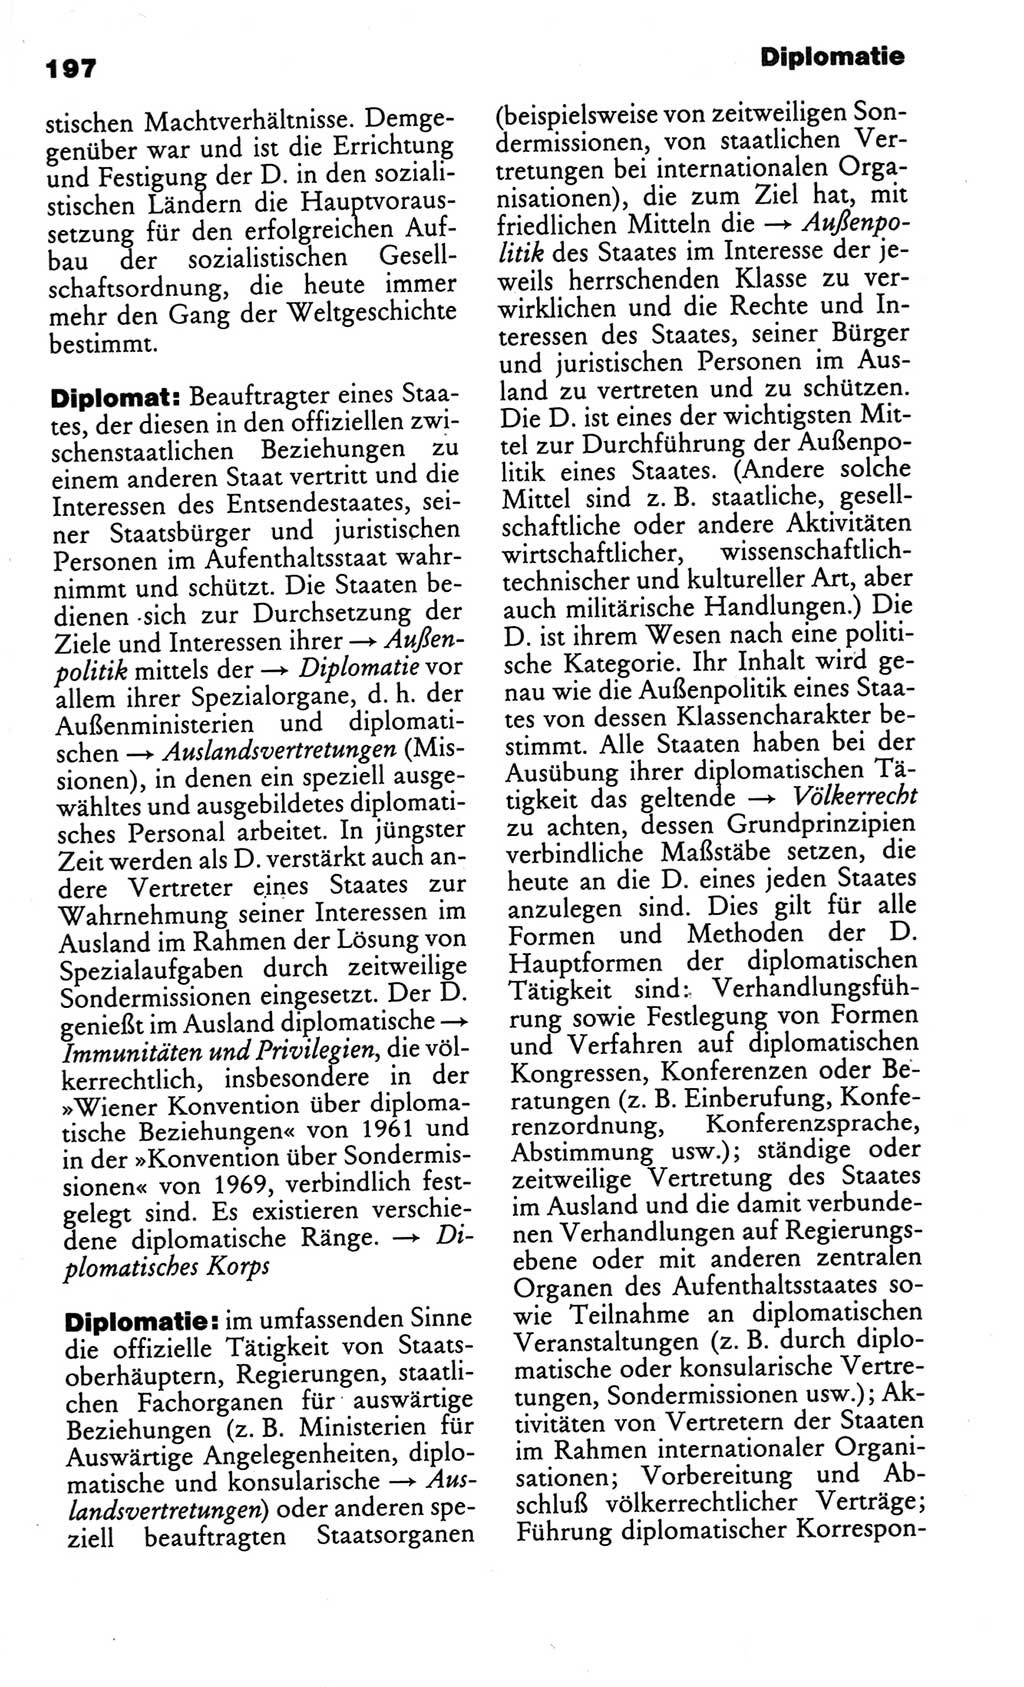 Kleines politisches Wörterbuch [Deutsche Demokratische Republik (DDR)] 1986, Seite 197 (Kl. pol. Wb. DDR 1986, S. 197)